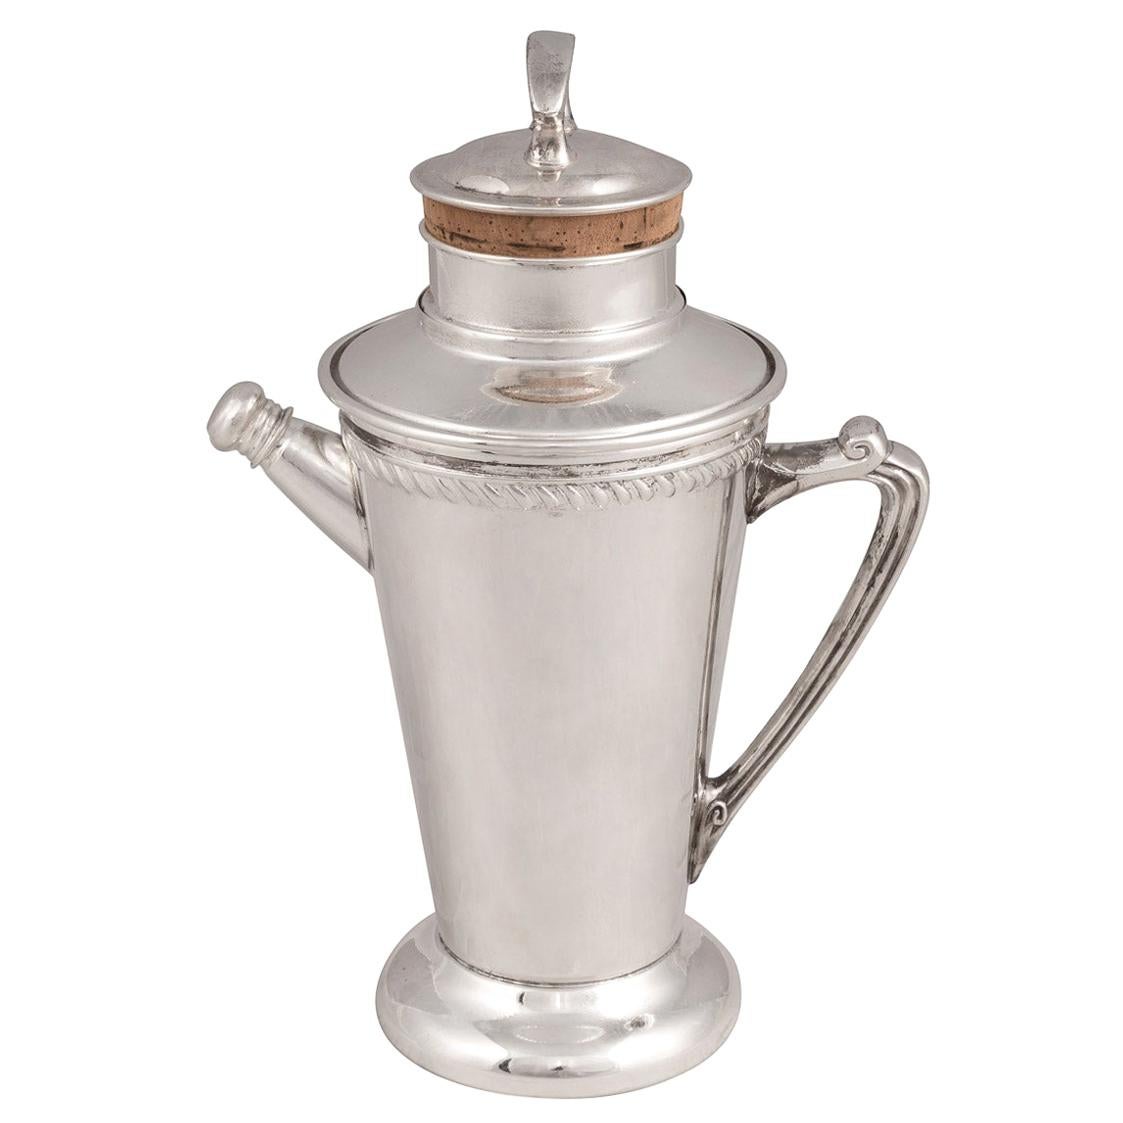 Shaker à cocktail « Recipe » en métal argenté américain du 20e siècle, vers 1930